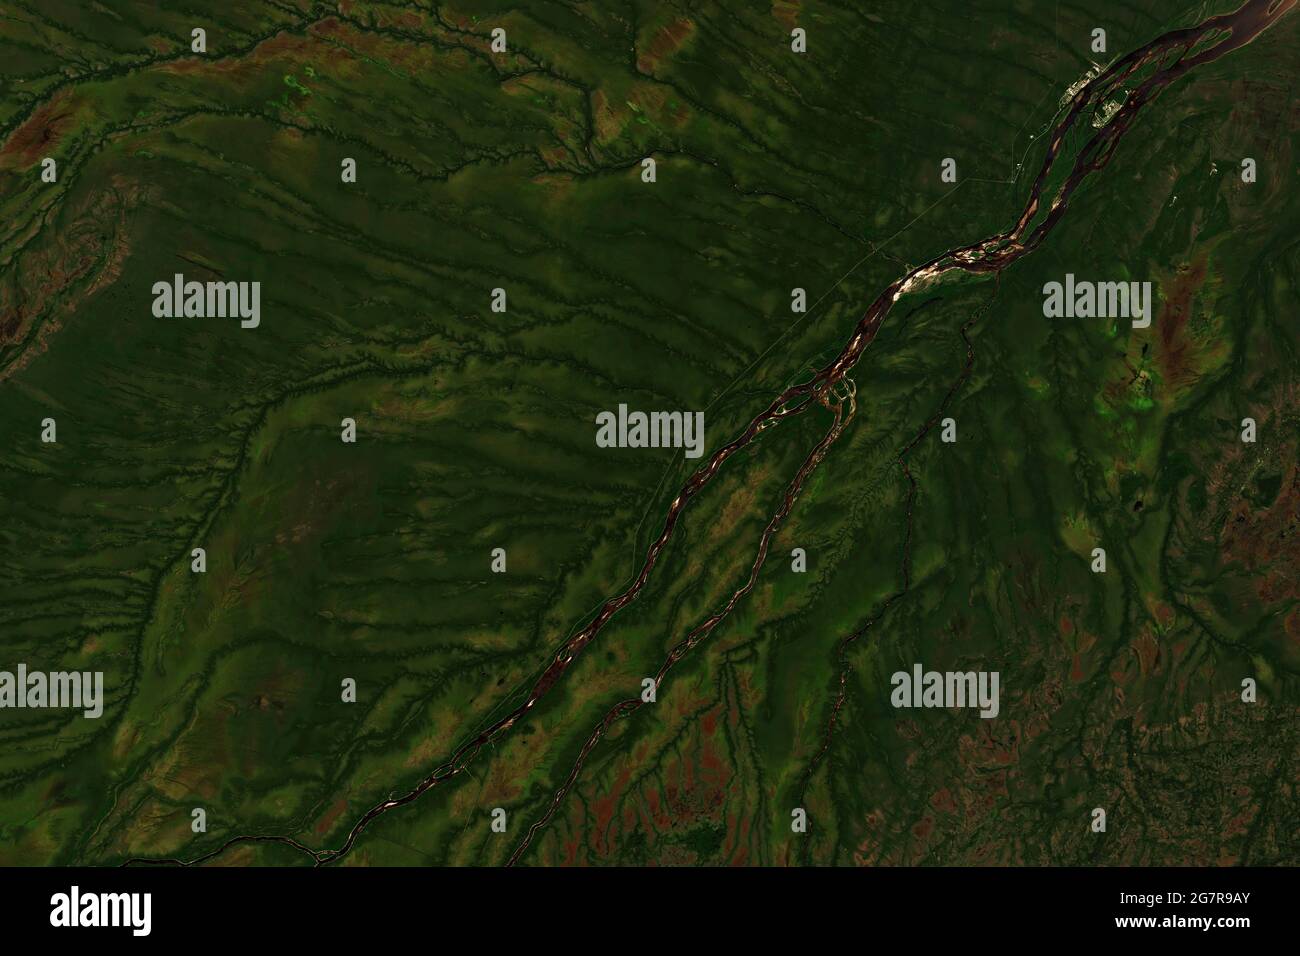 Bacino di drenaggio colorato del fiume Moose in Ontario, Canada, che scorre nella baia di James visto dallo spazio - contiene dati Copernicus Sentinel modificati (2020) Foto Stock